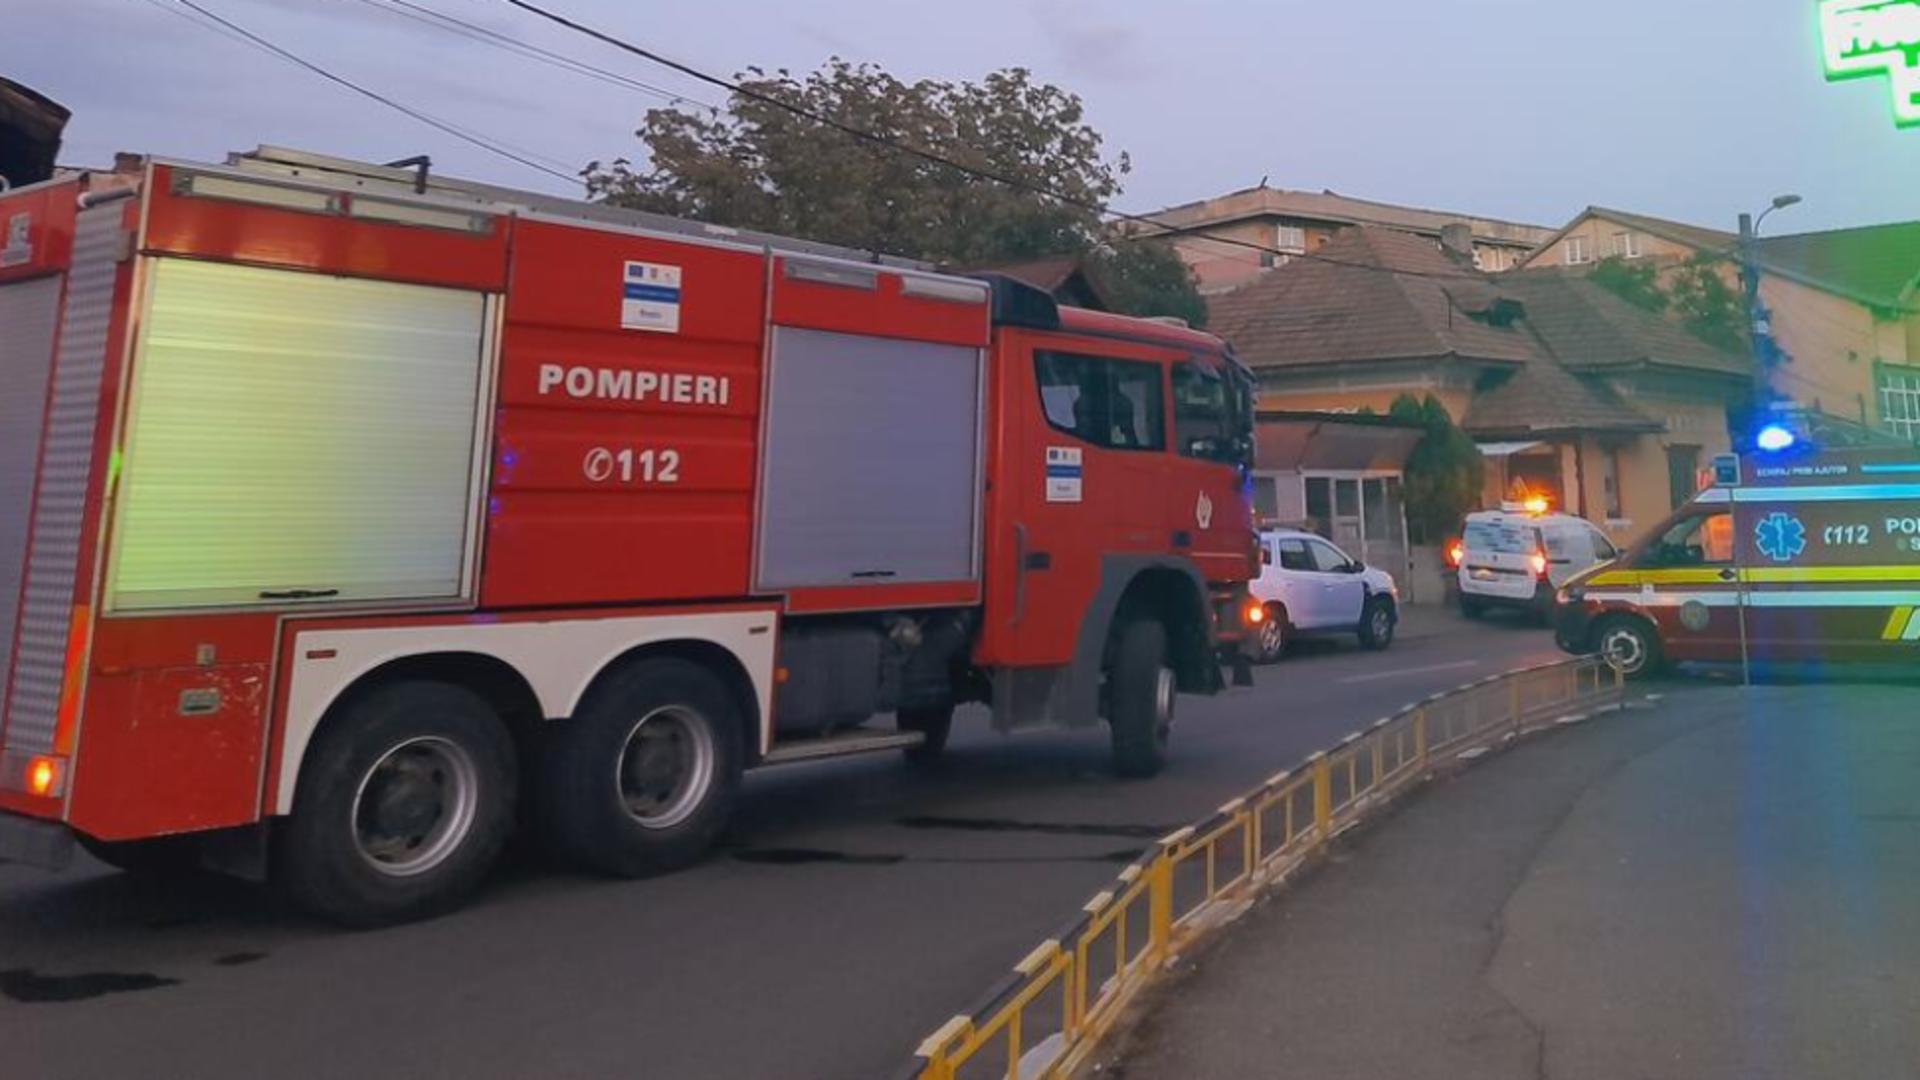 Alertă în Târgu Jiu: O stradă a fost complet închisă după ce a apărut o ridicătură suspectă în asfalt - Intervenția pompierilor